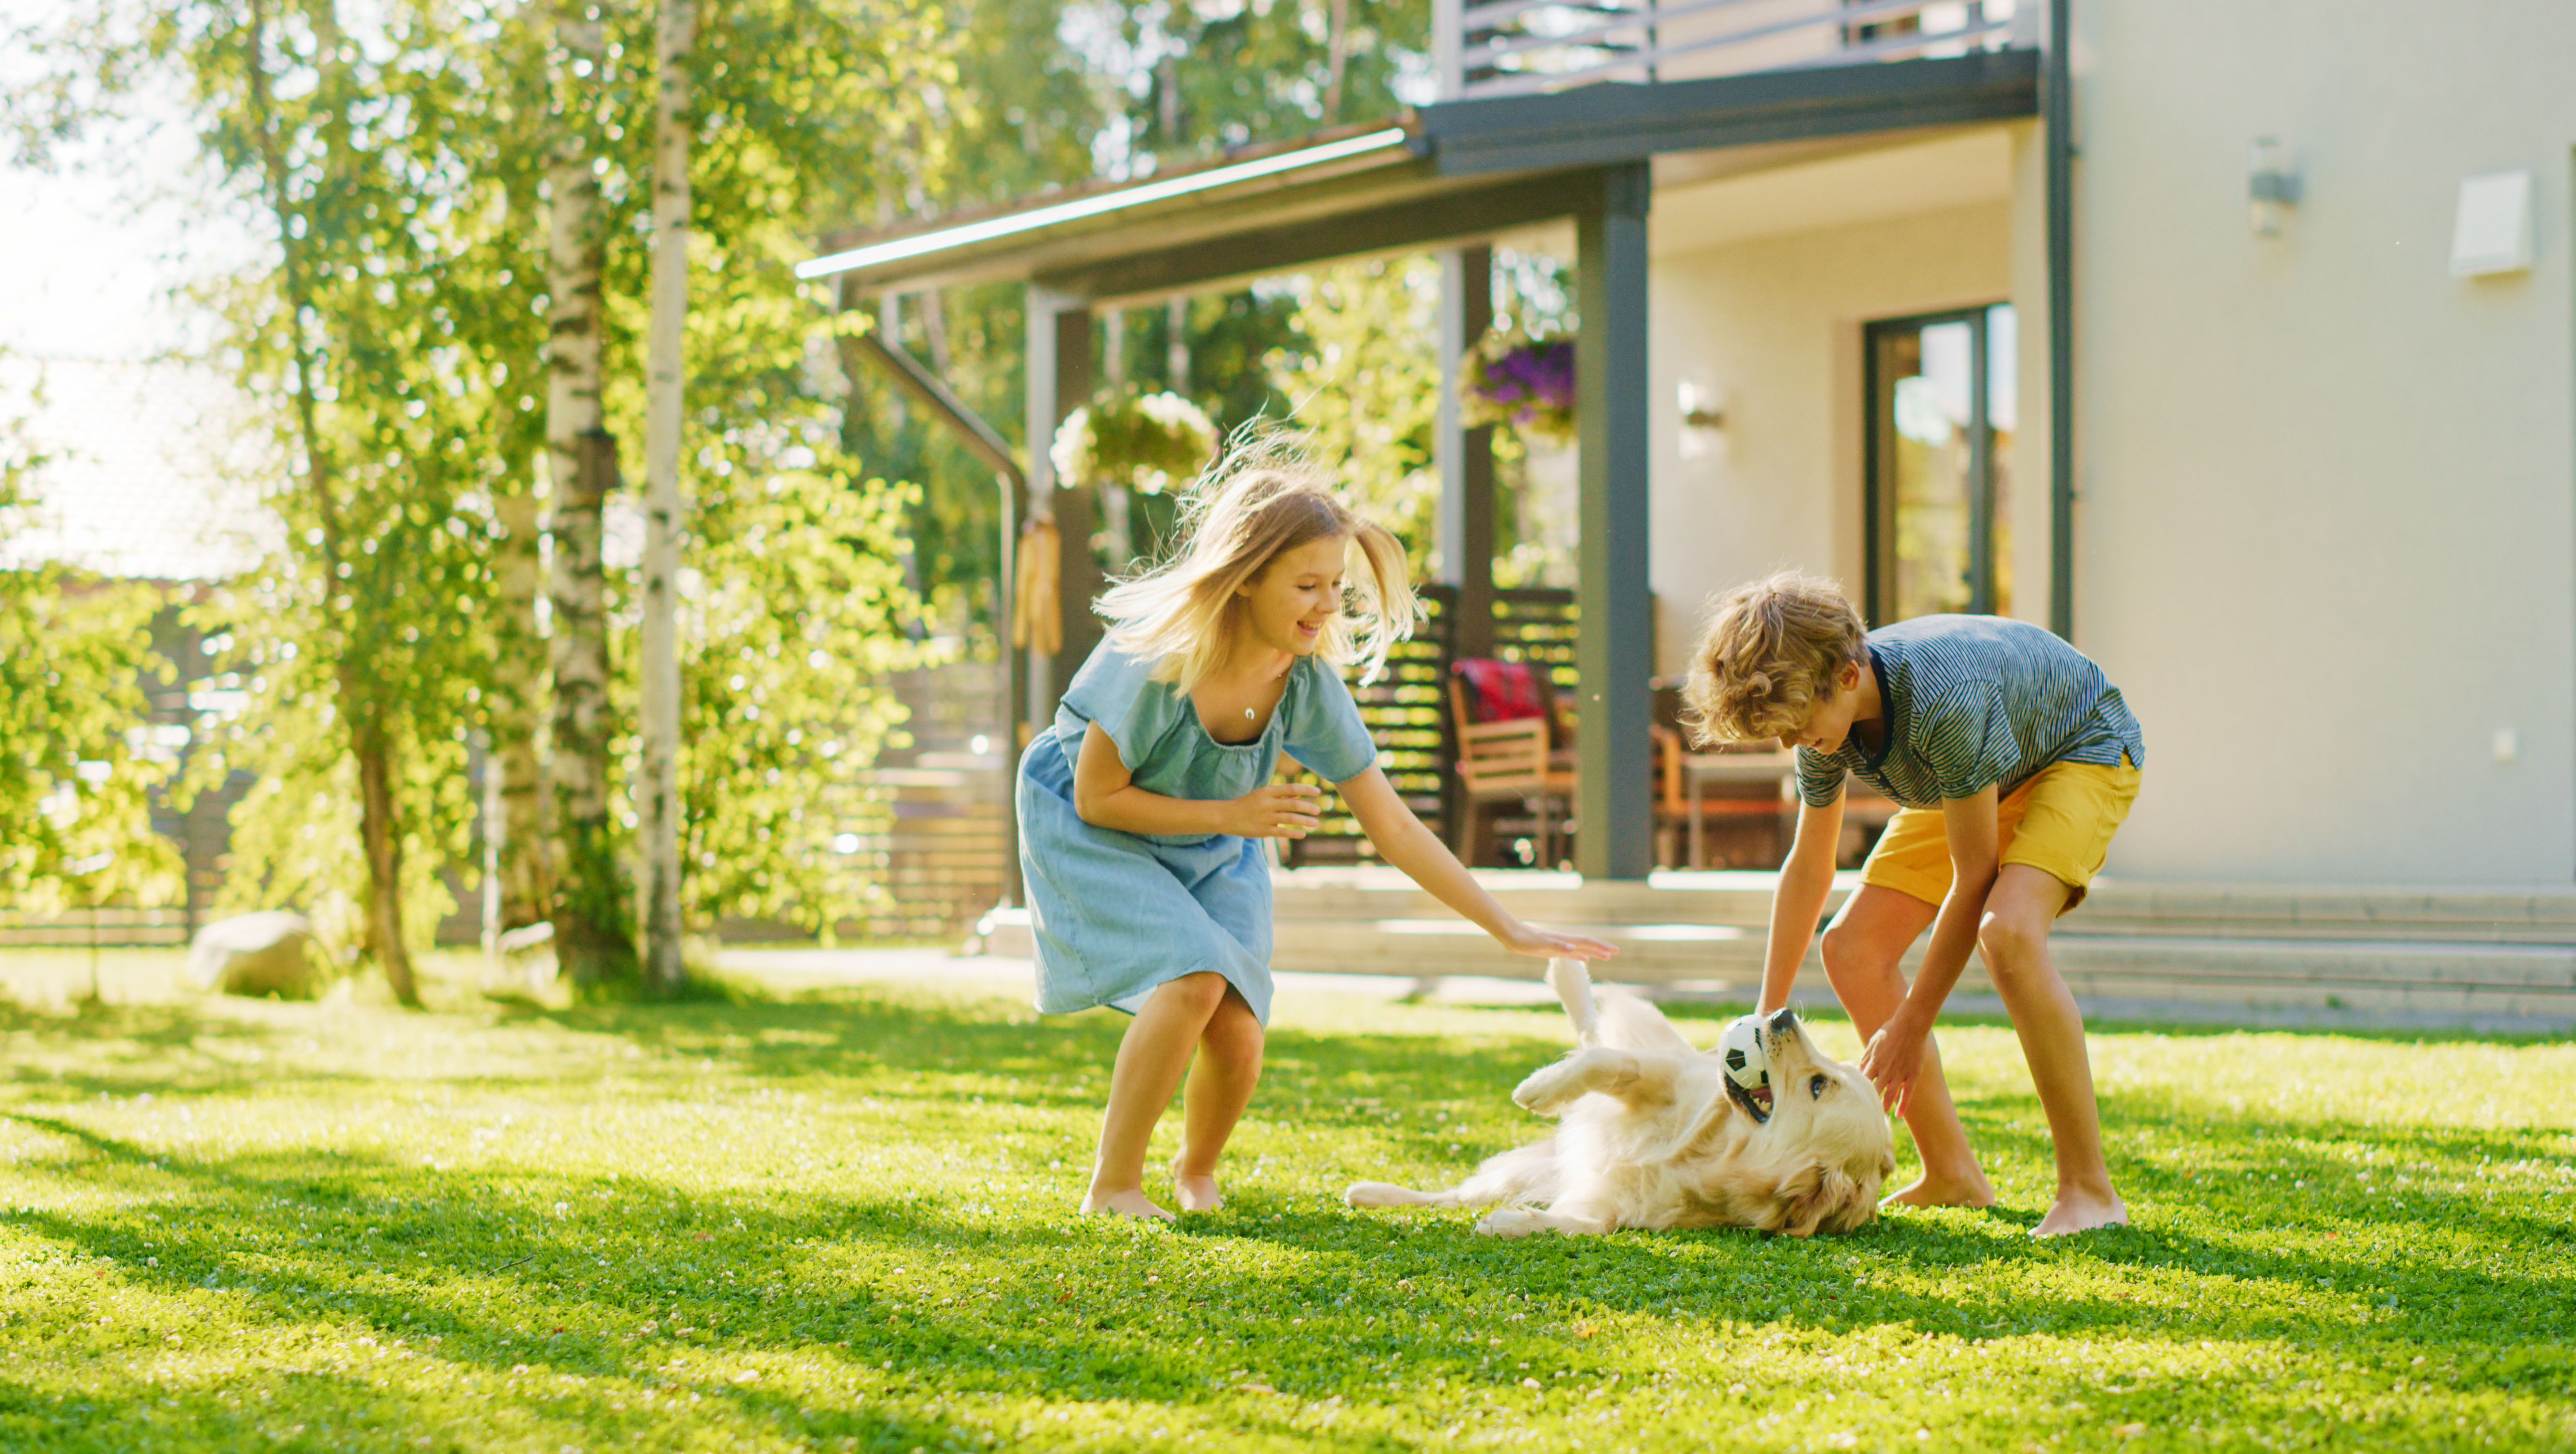 Дети и собака играют на пышной зеленой лужайке